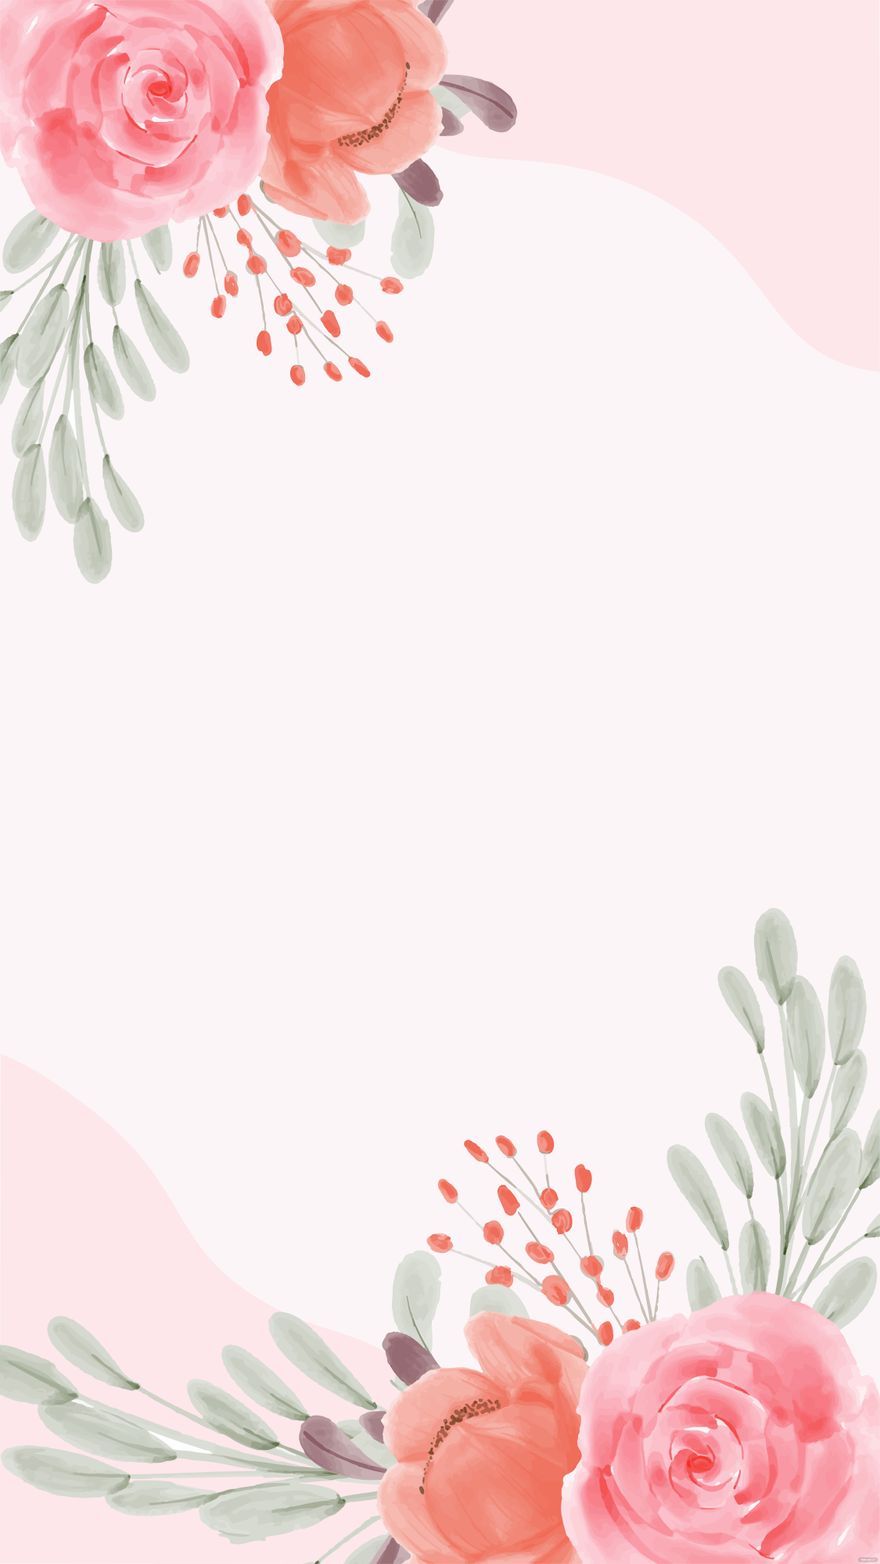 Bridal Shower Invitation Floral Background in Illustrator, EPS, SVG, JPG